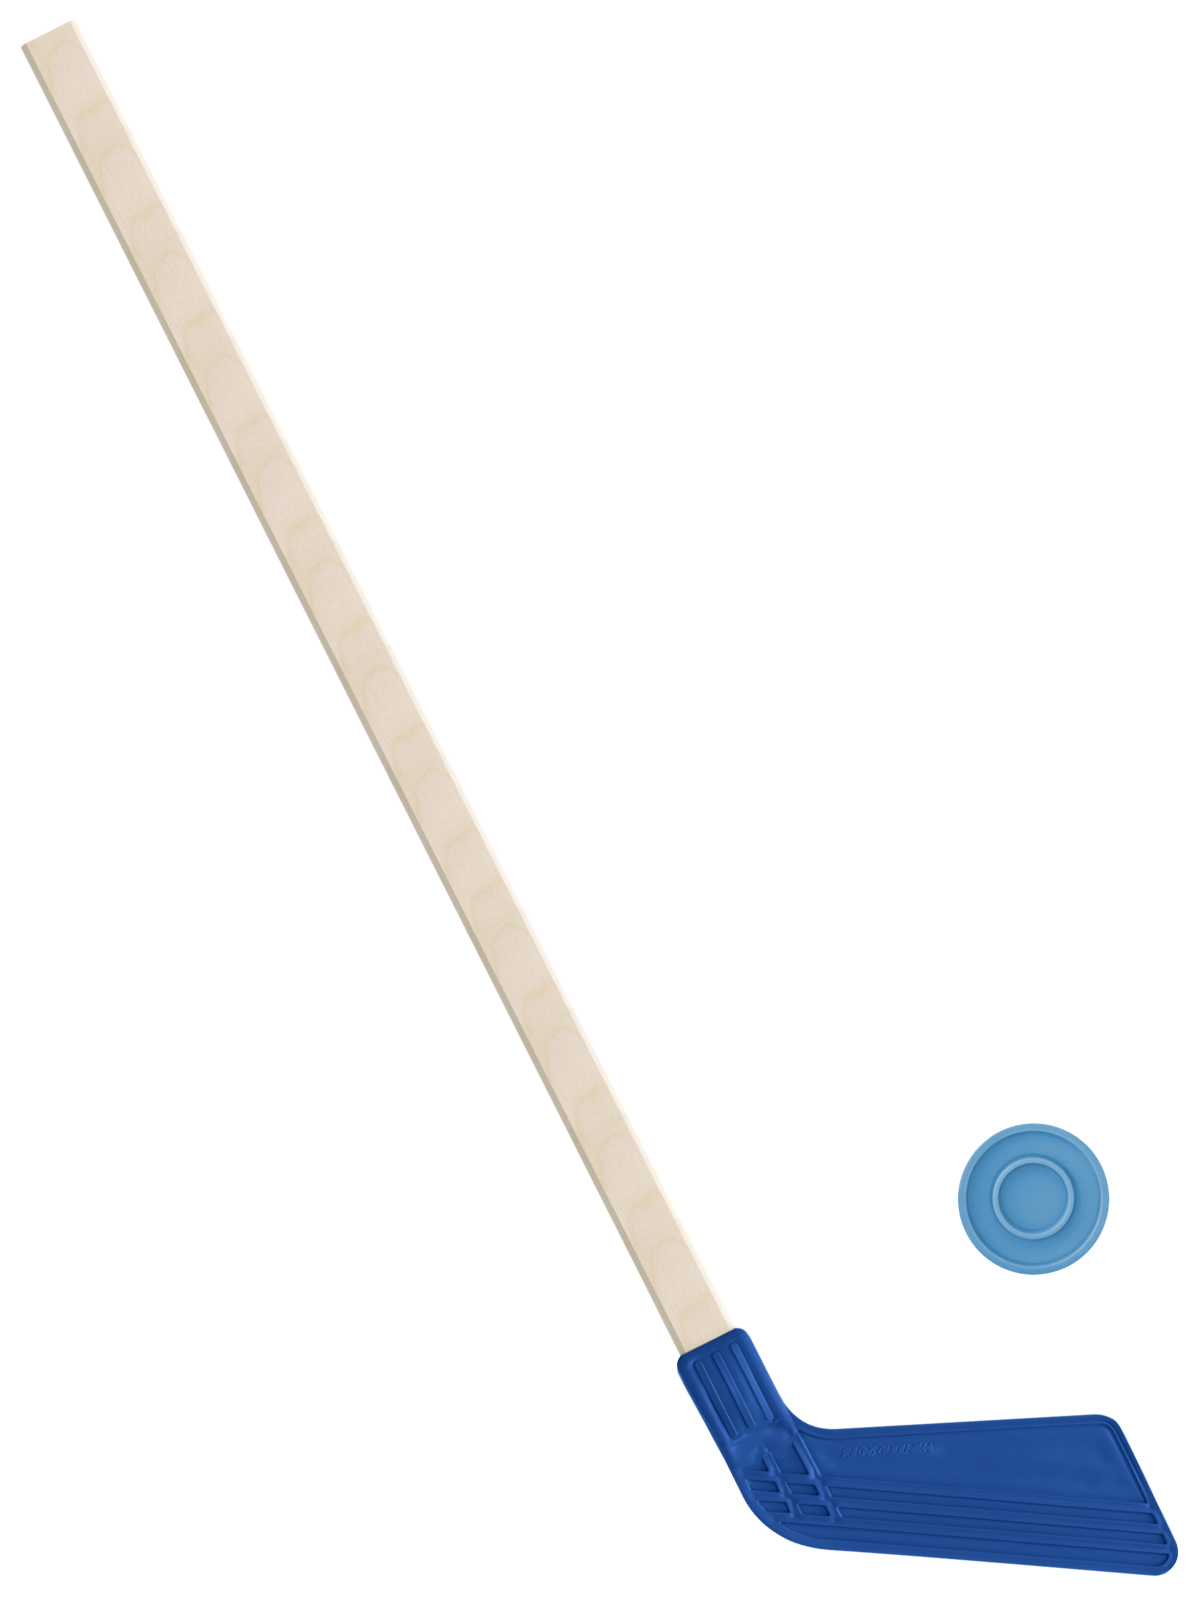 Детский хоккейный набор Задира-плюс, клюшка хоккейная 80 см (синяя)+шайба набор хоккей клюшка шайба кх 55 в ассортименте